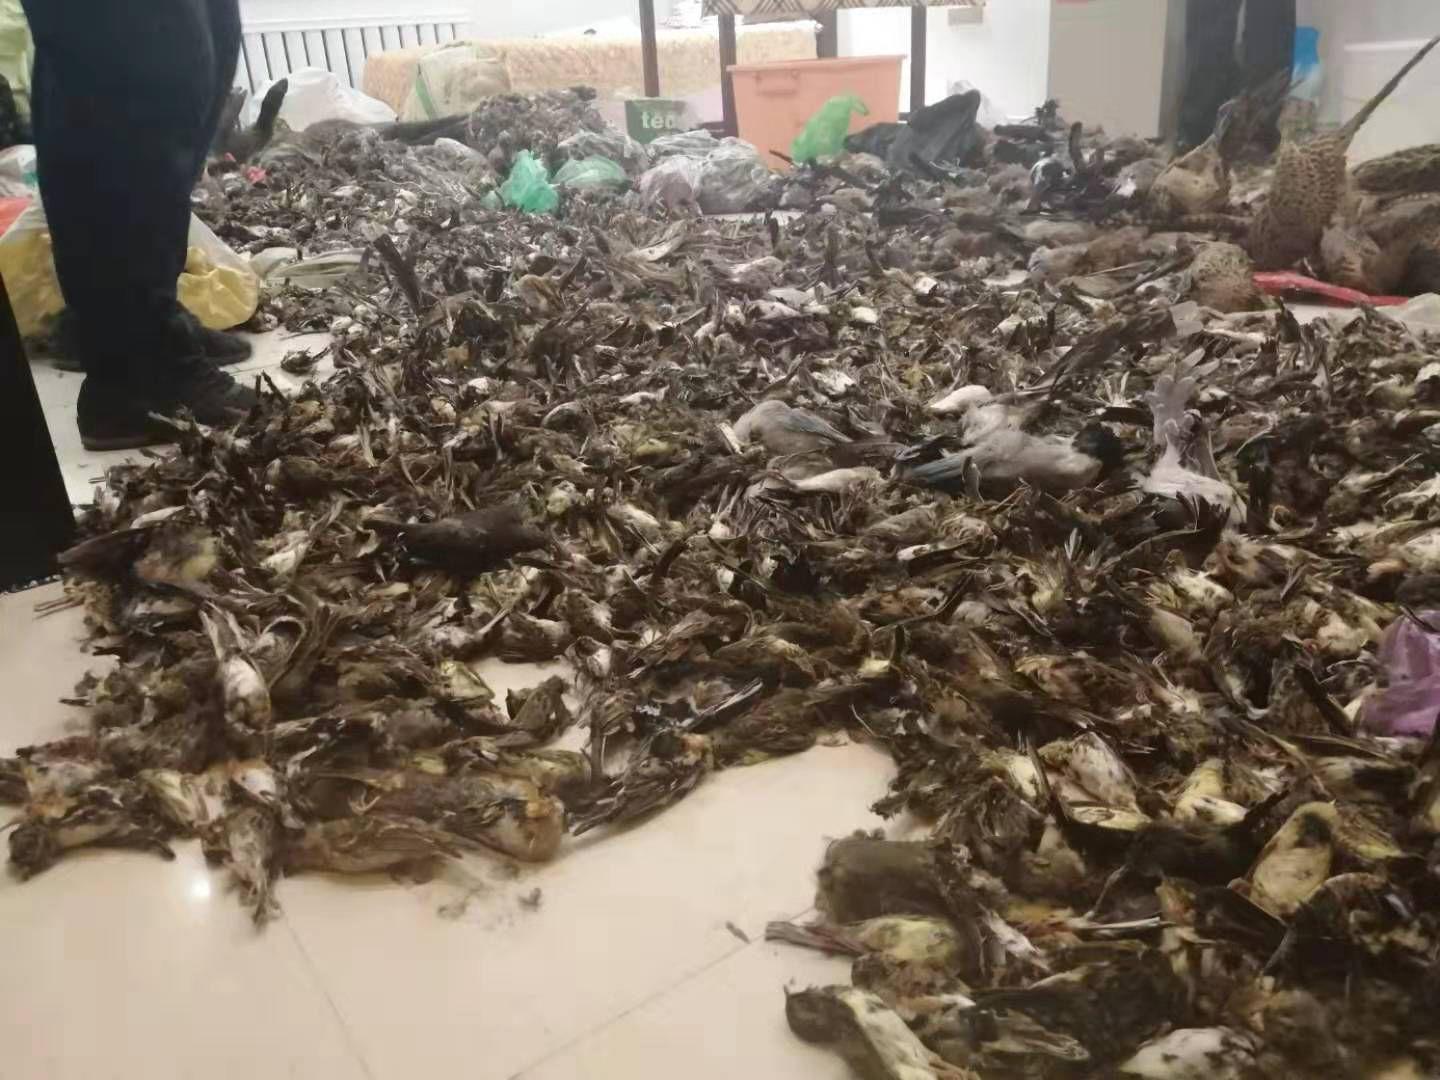 黑龙江一特产店藏7000余只野生动物 警方立案调查